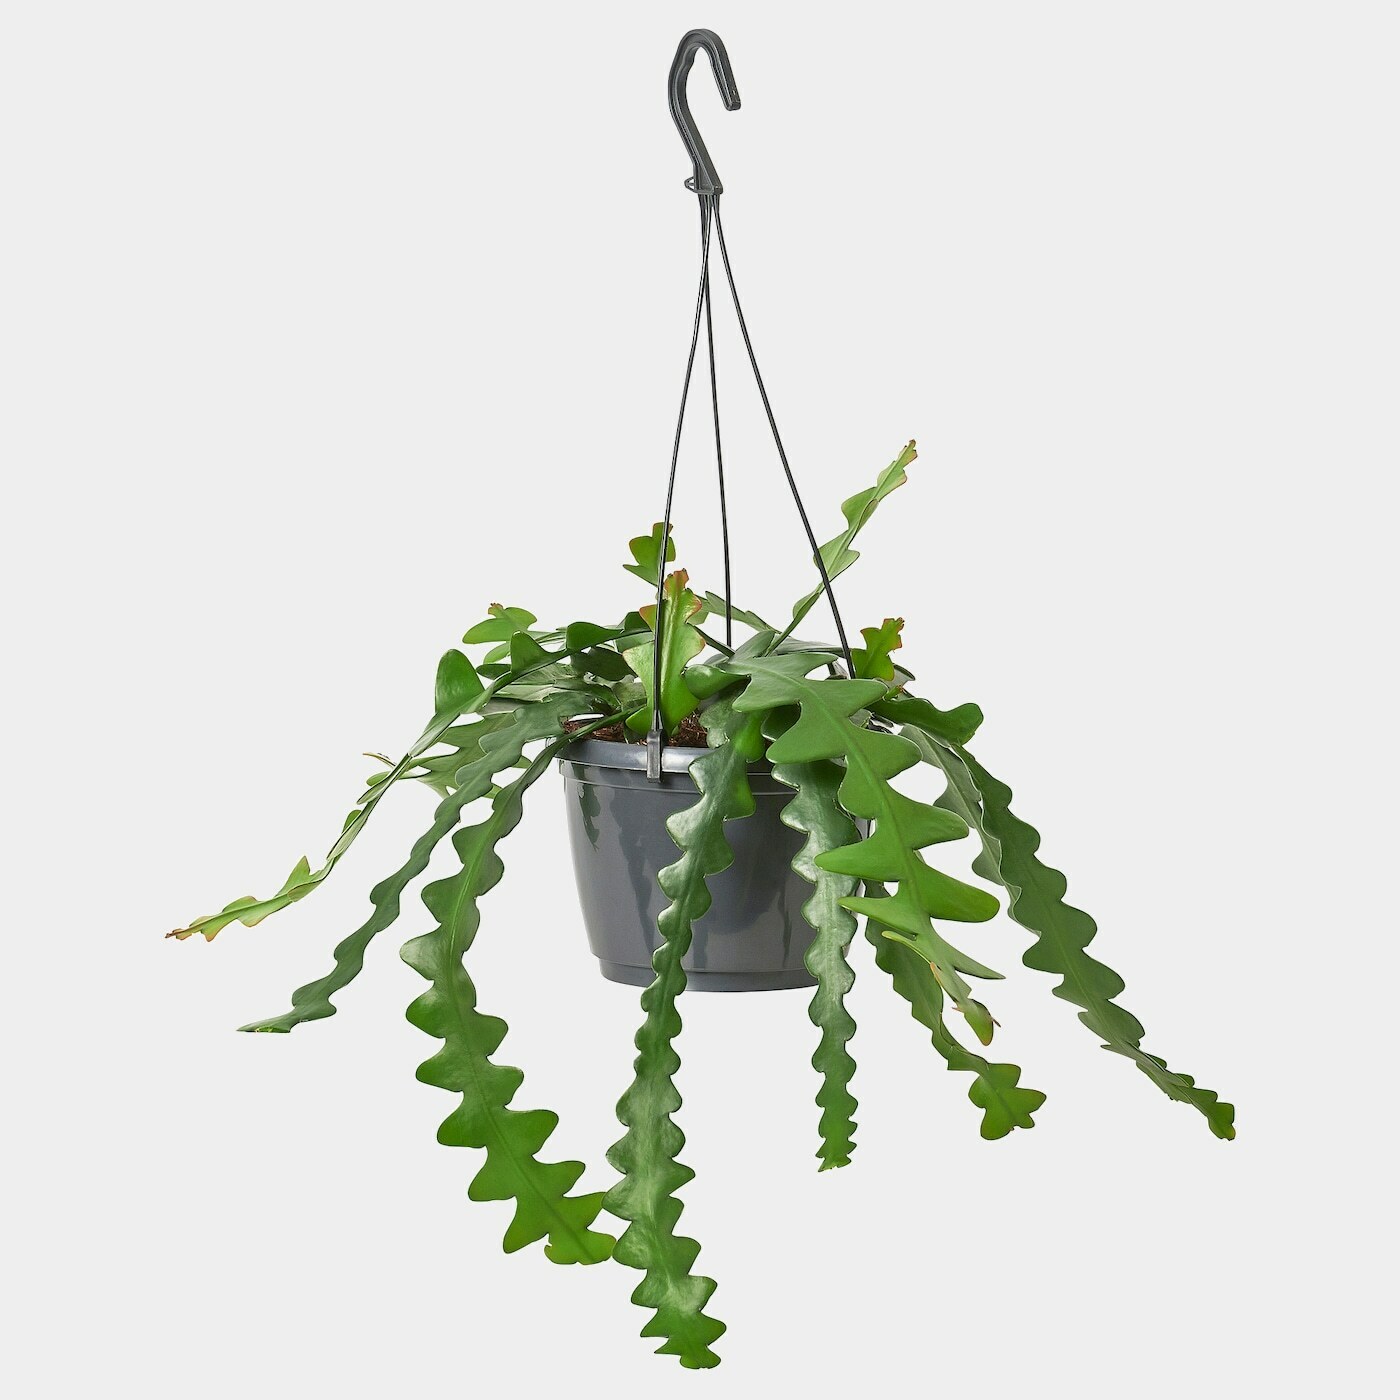 EPIPHYLLUM Ampelpflanze  -  - Möbel Ideen für dein Zuhause von Home Trends. Möbel Trends von Social Media Influencer für dein Skandi Zuhause.